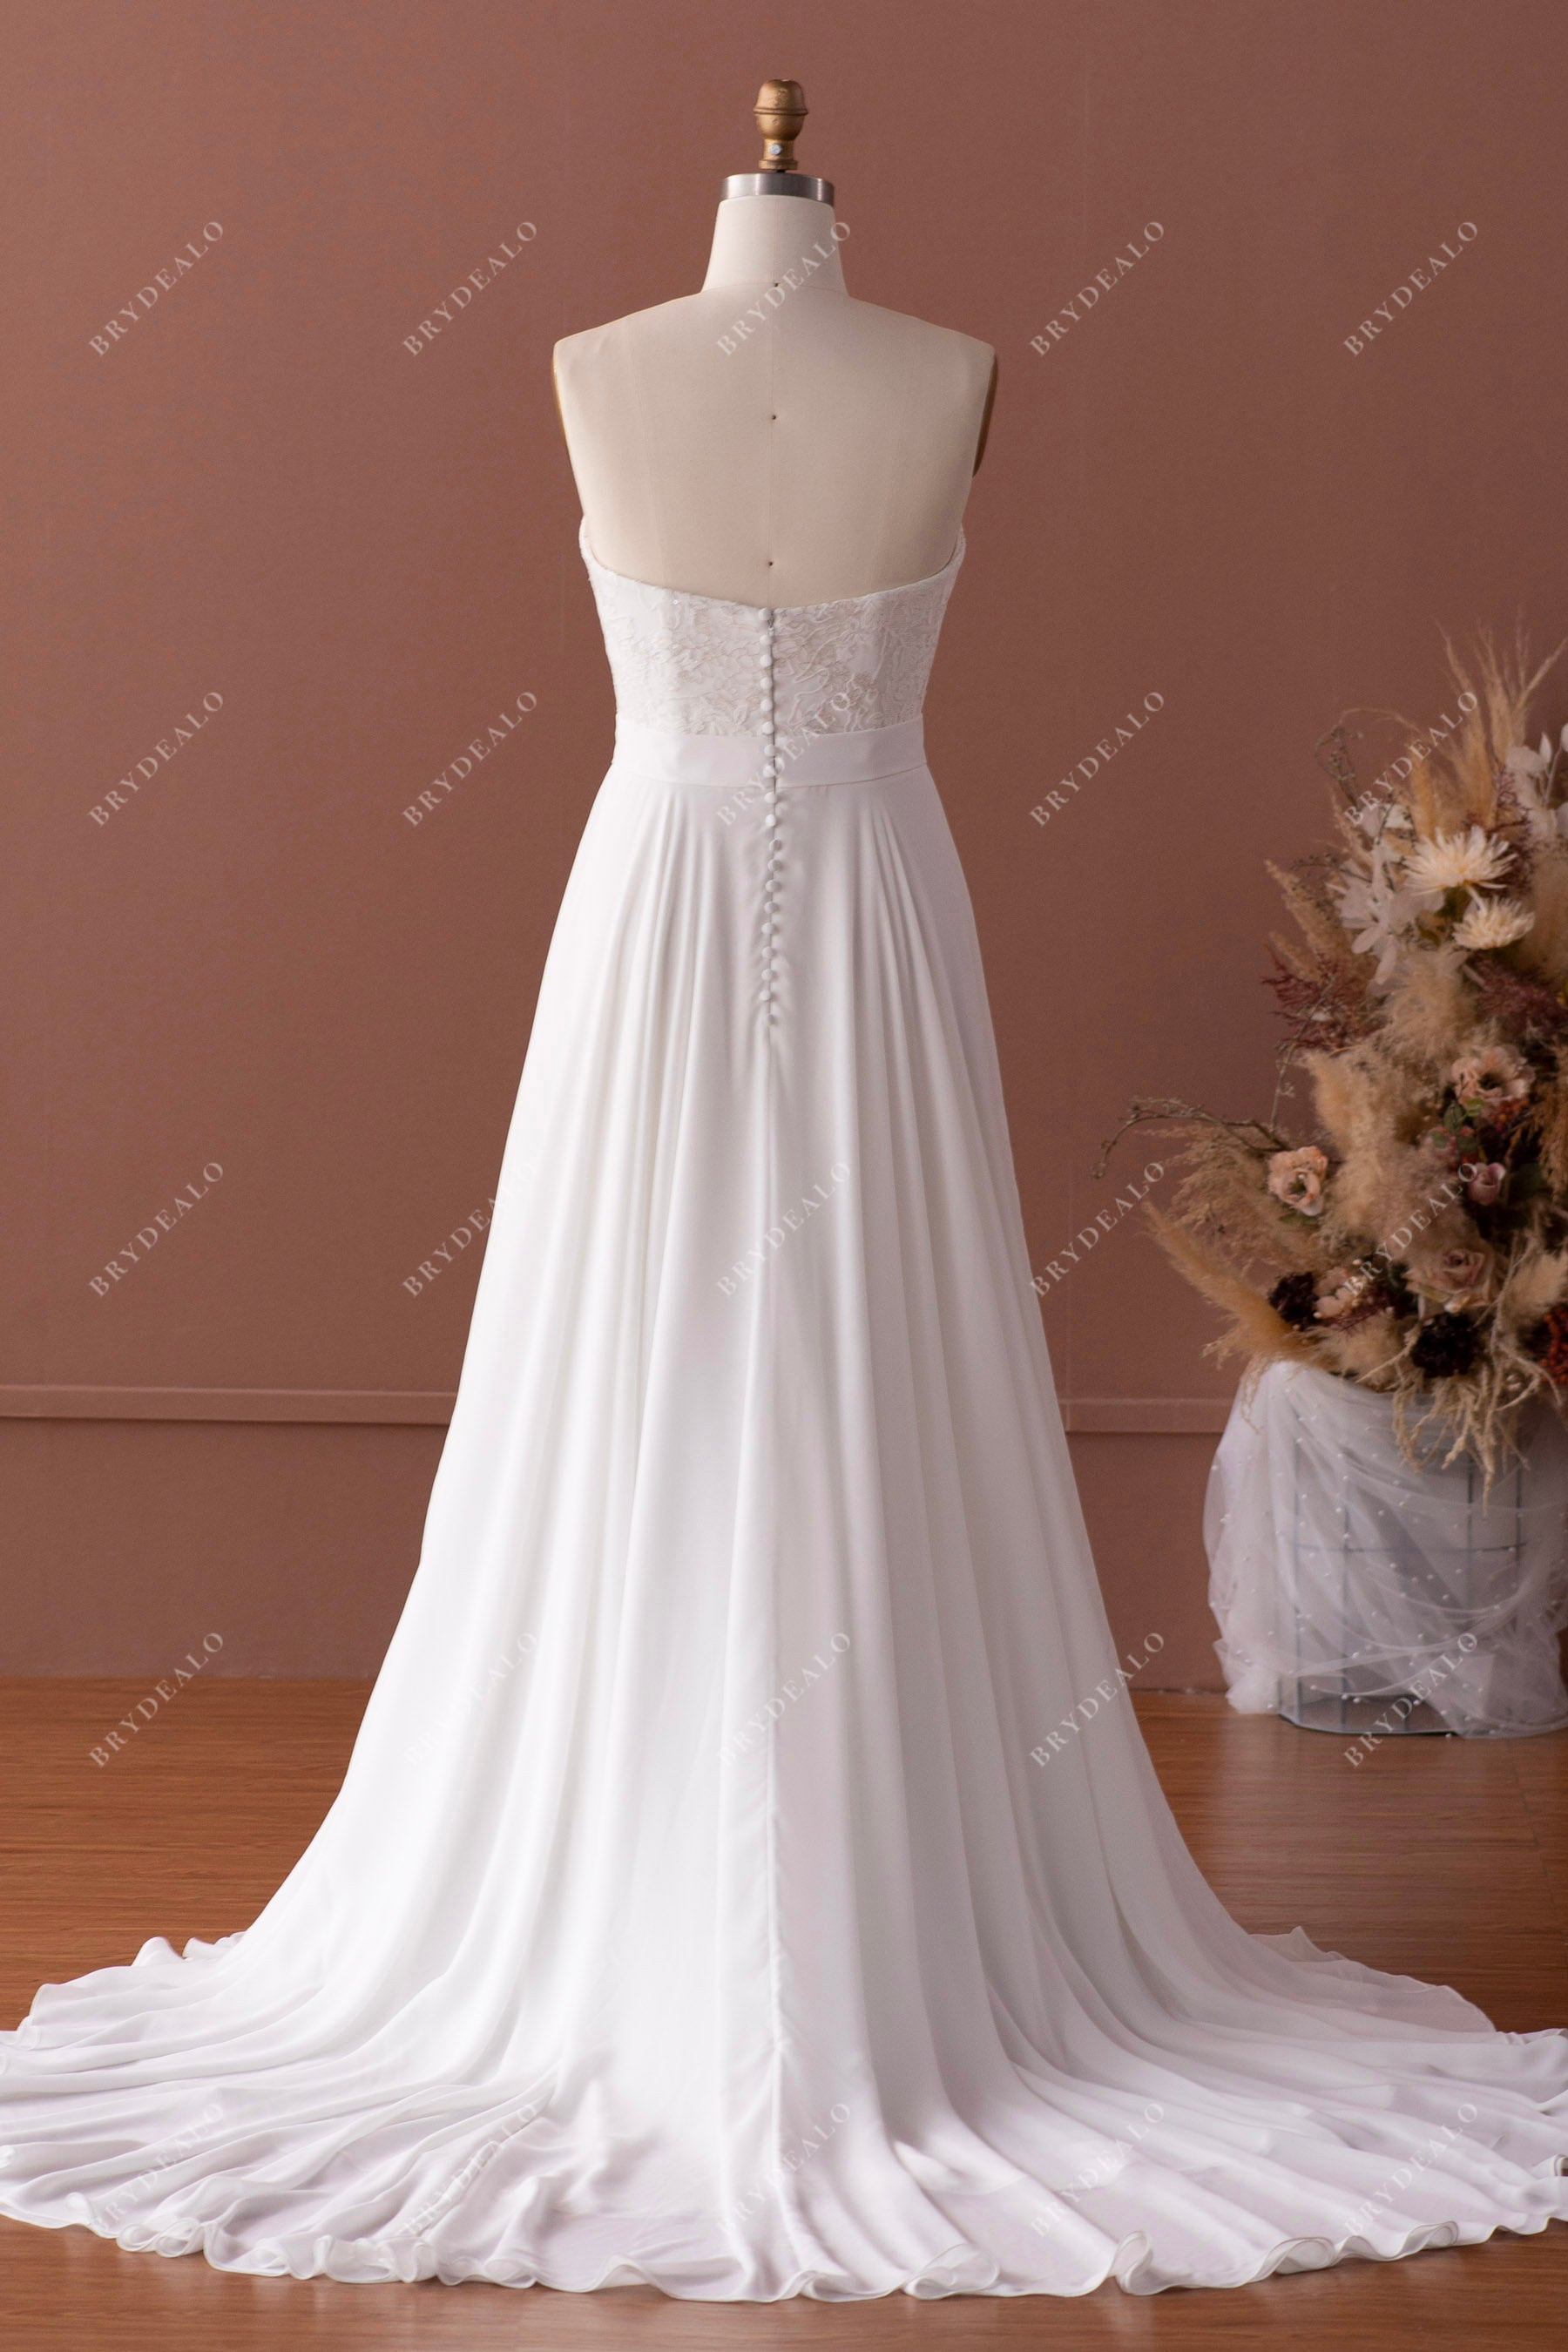 strapless slowing chiffon wedding dress